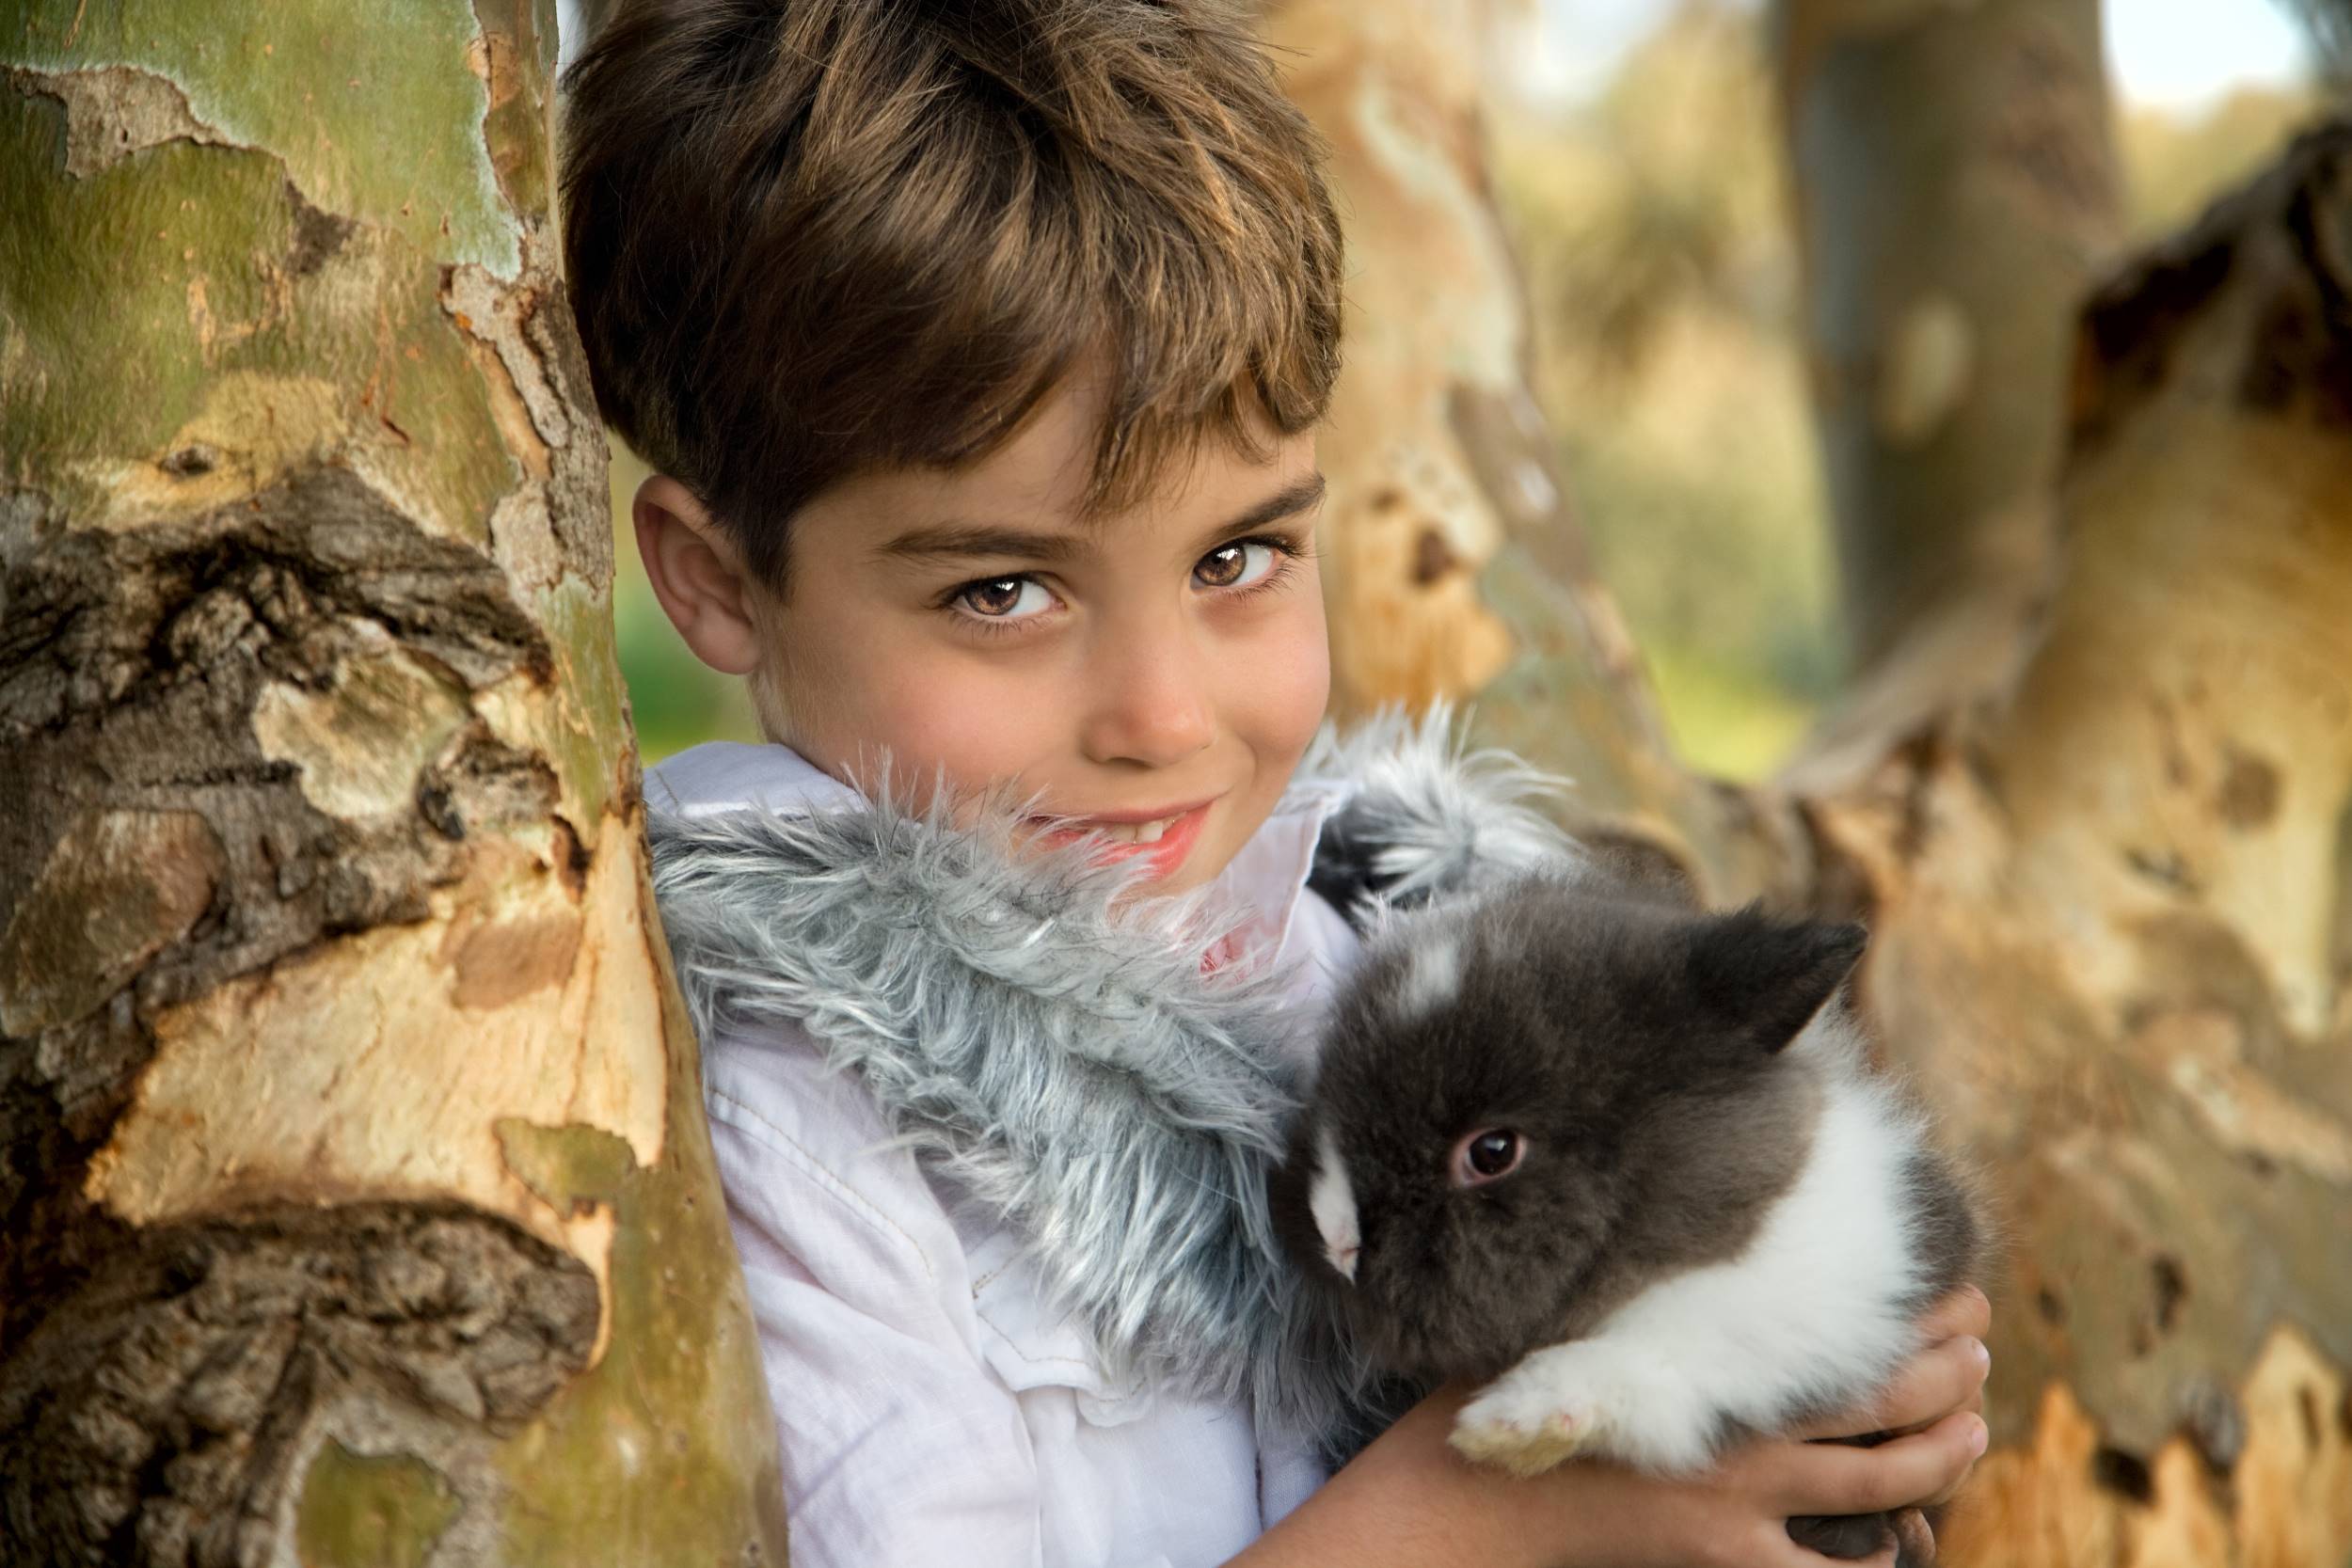 צילום ילד מחזיק ארנב עם עינים שקד מעיל לבן על עץ בטבע